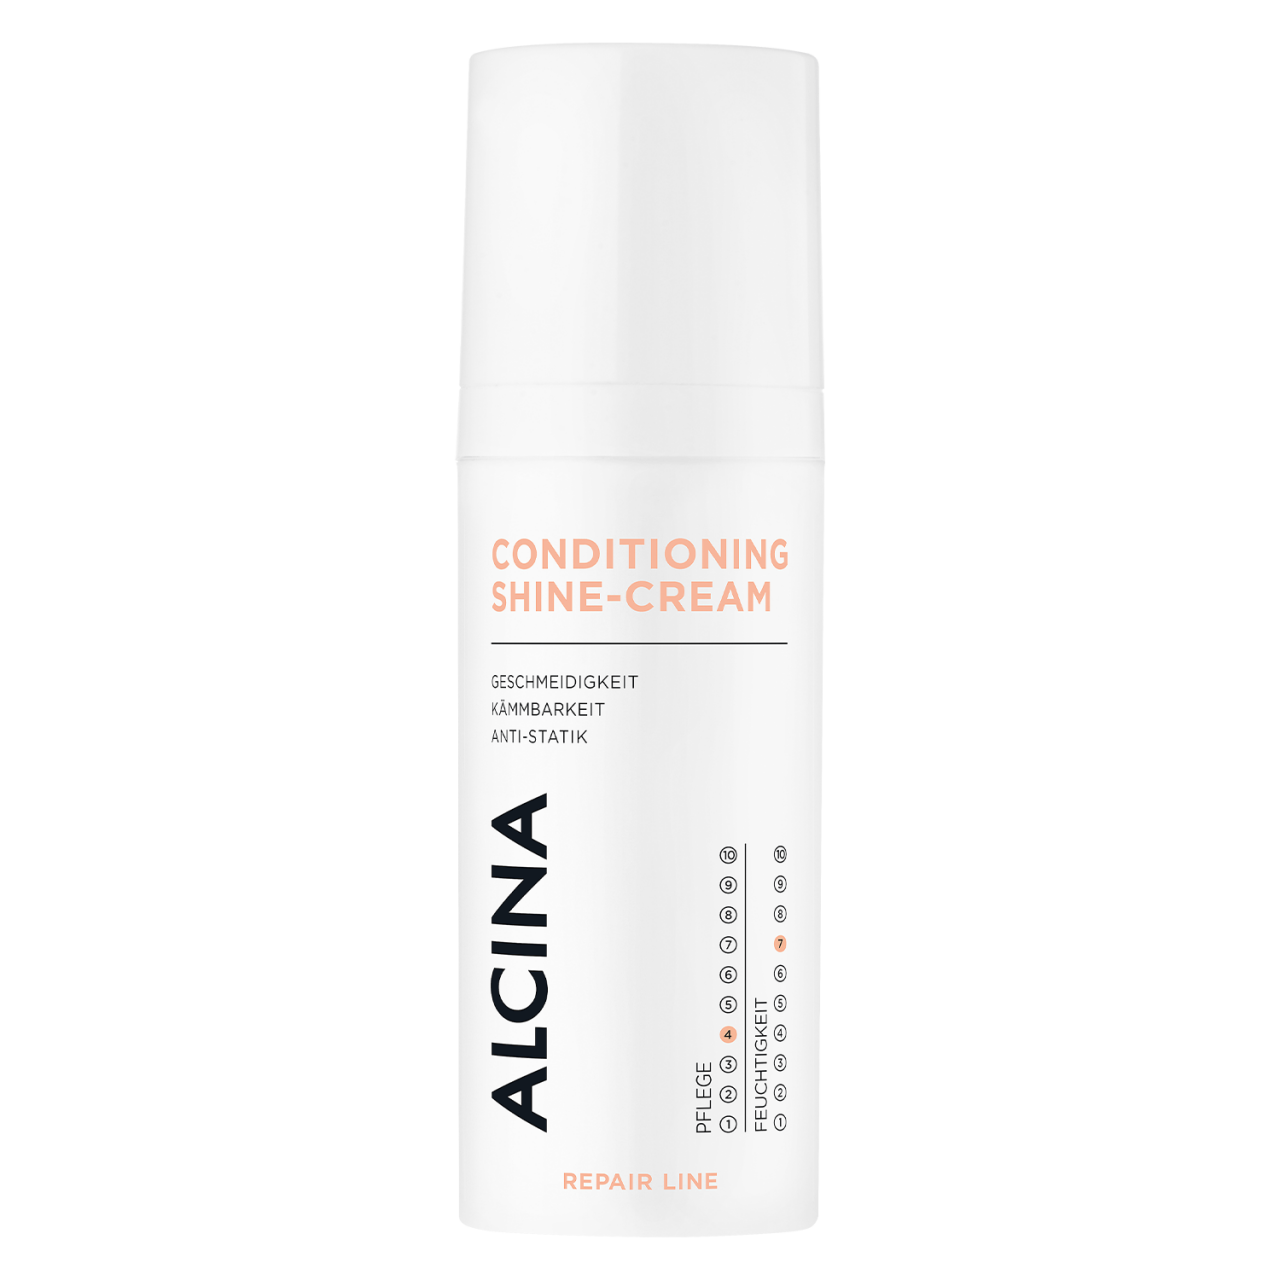 Repair Line - Conditioning Shine-Cream von Alcina